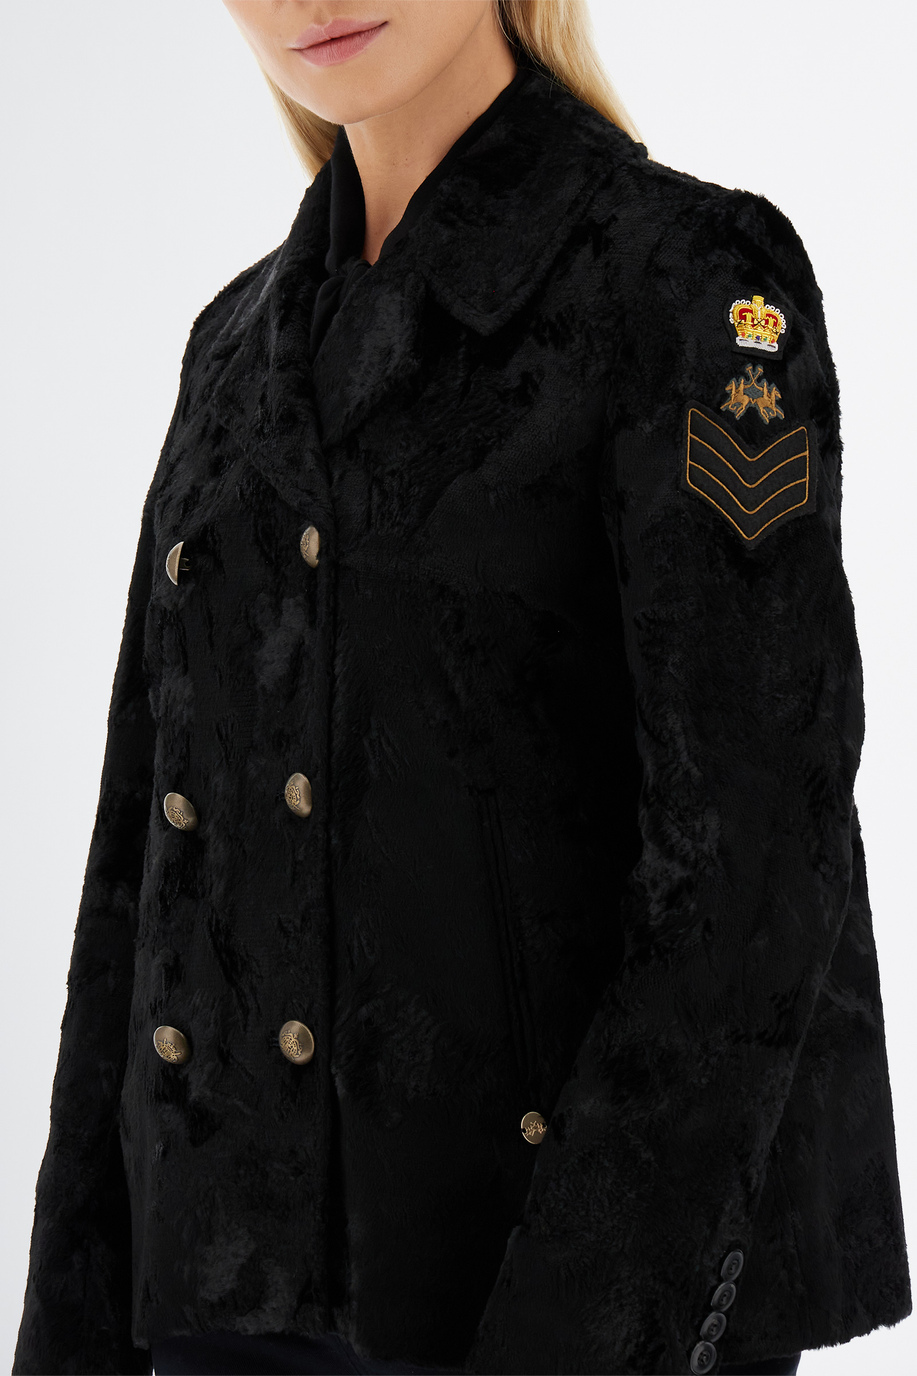 Damen Langarm England Jacke mit Pelz - Eleganter Look für sie | La Martina - Official Online Shop